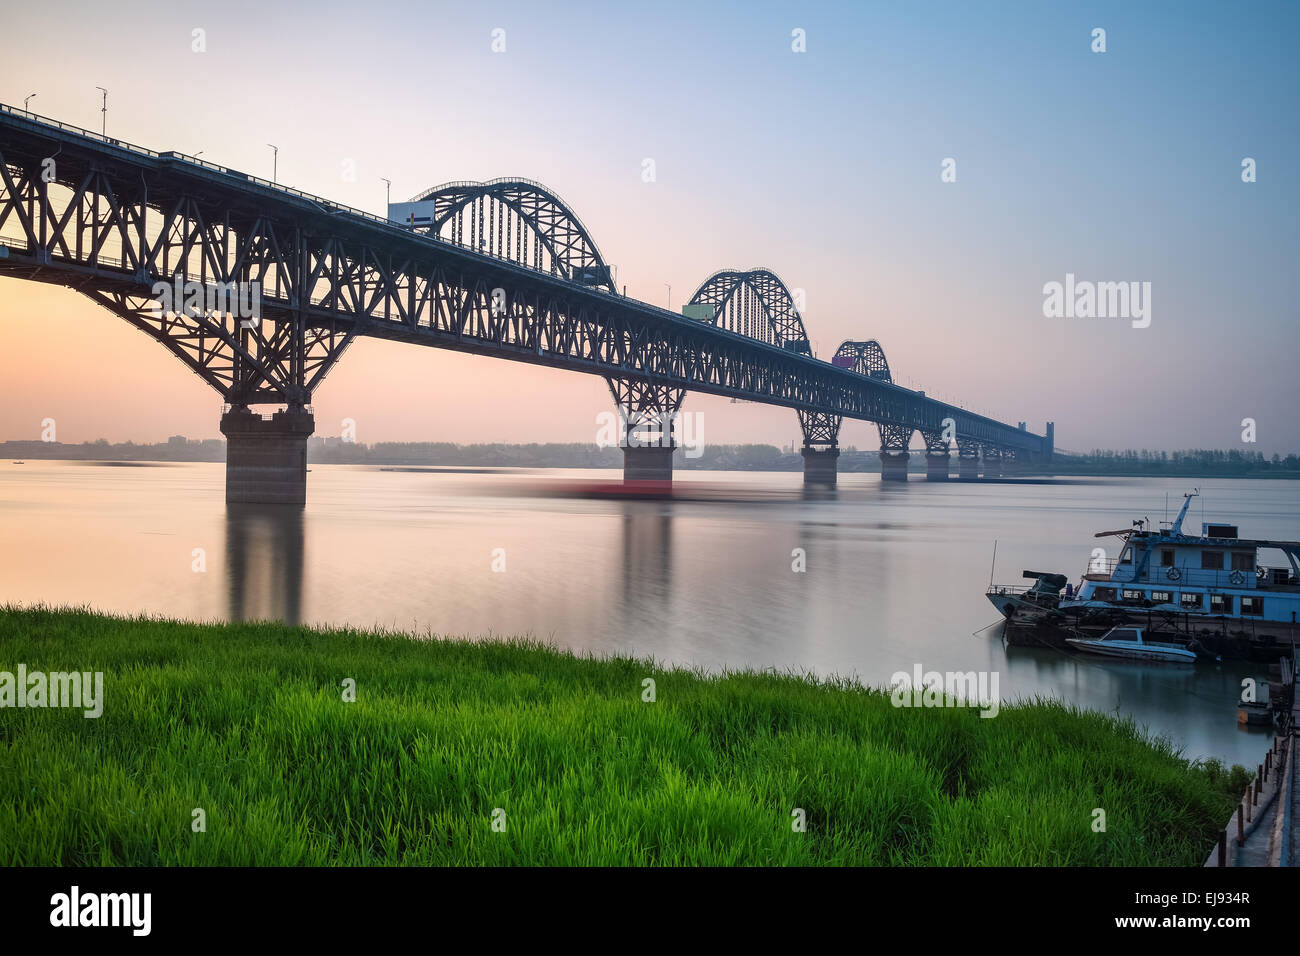 beautiful jiujiang yangtze river bridge at dusk Stock Photo